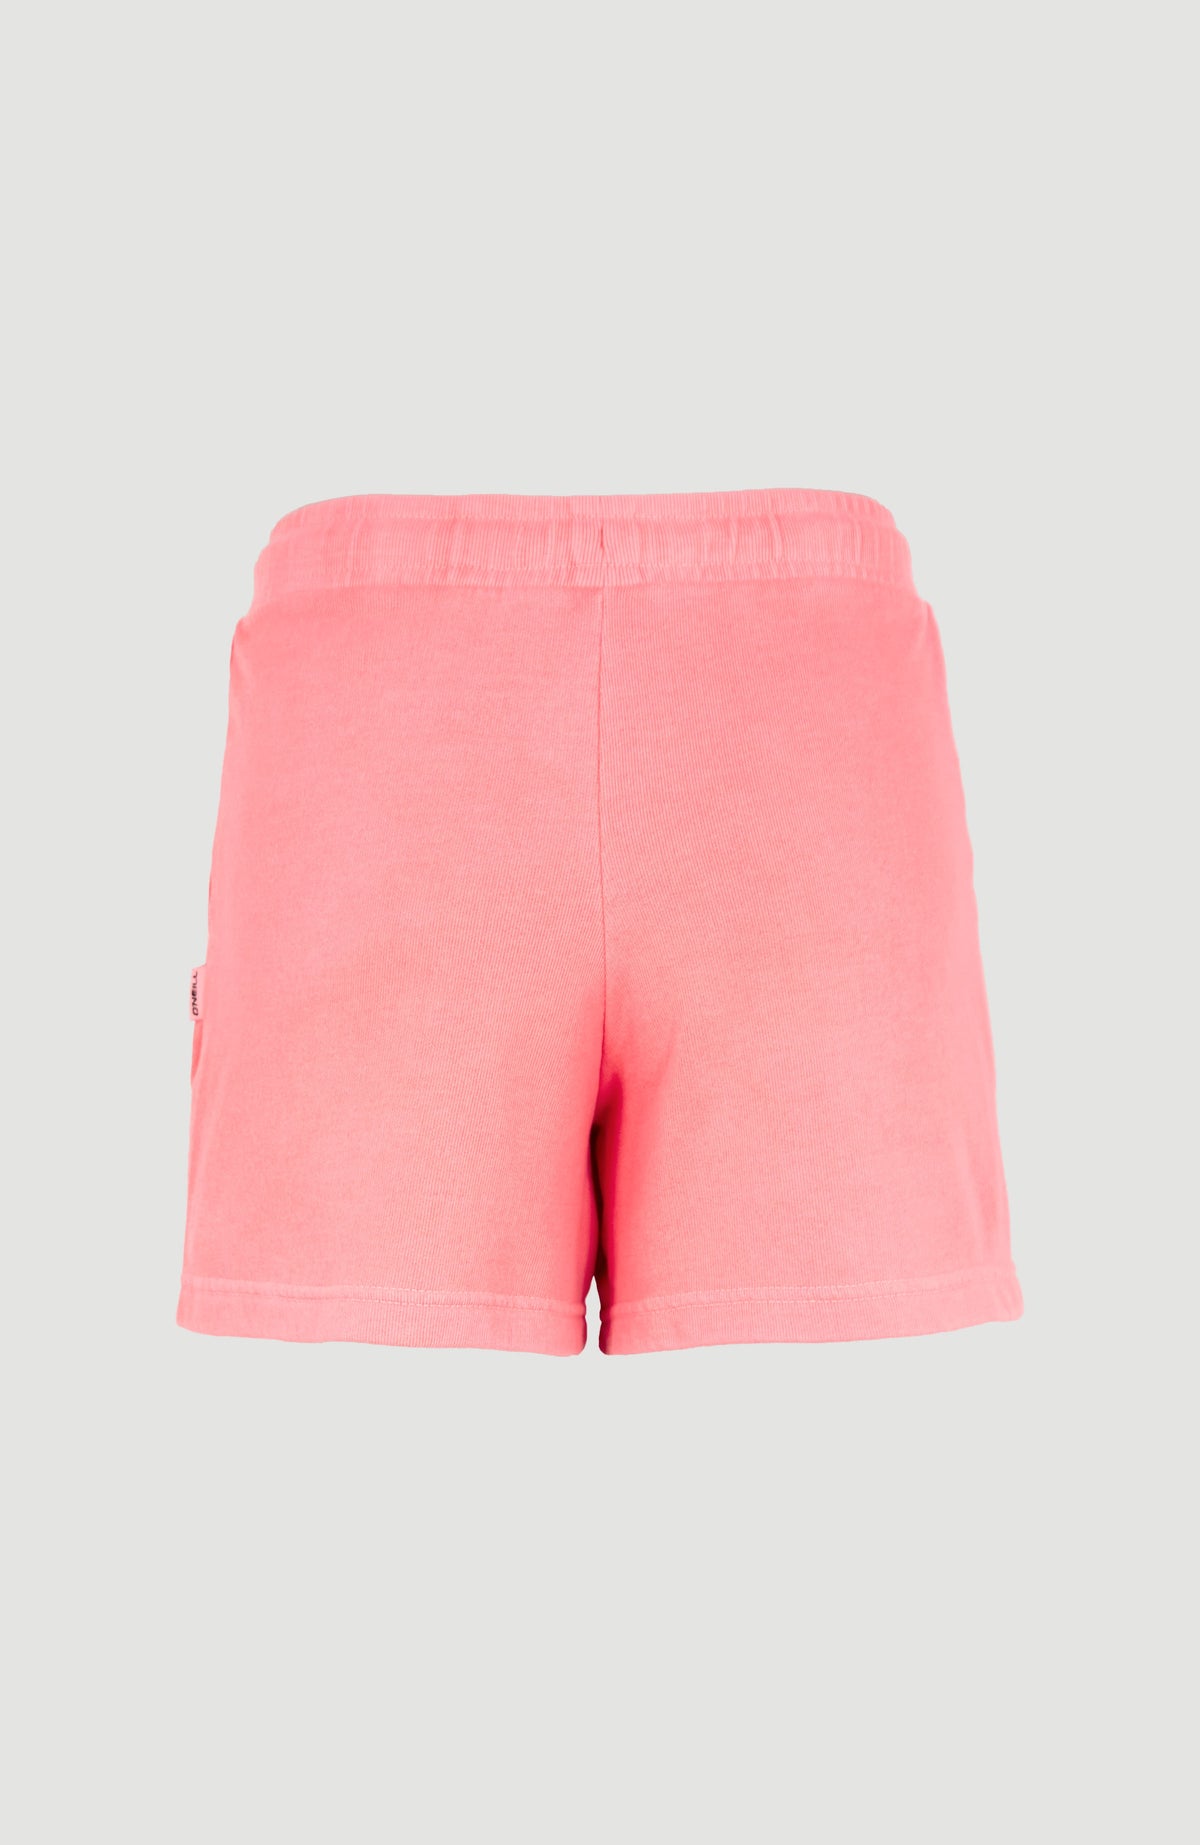 O'Neills Women's Paris Shorts Pink